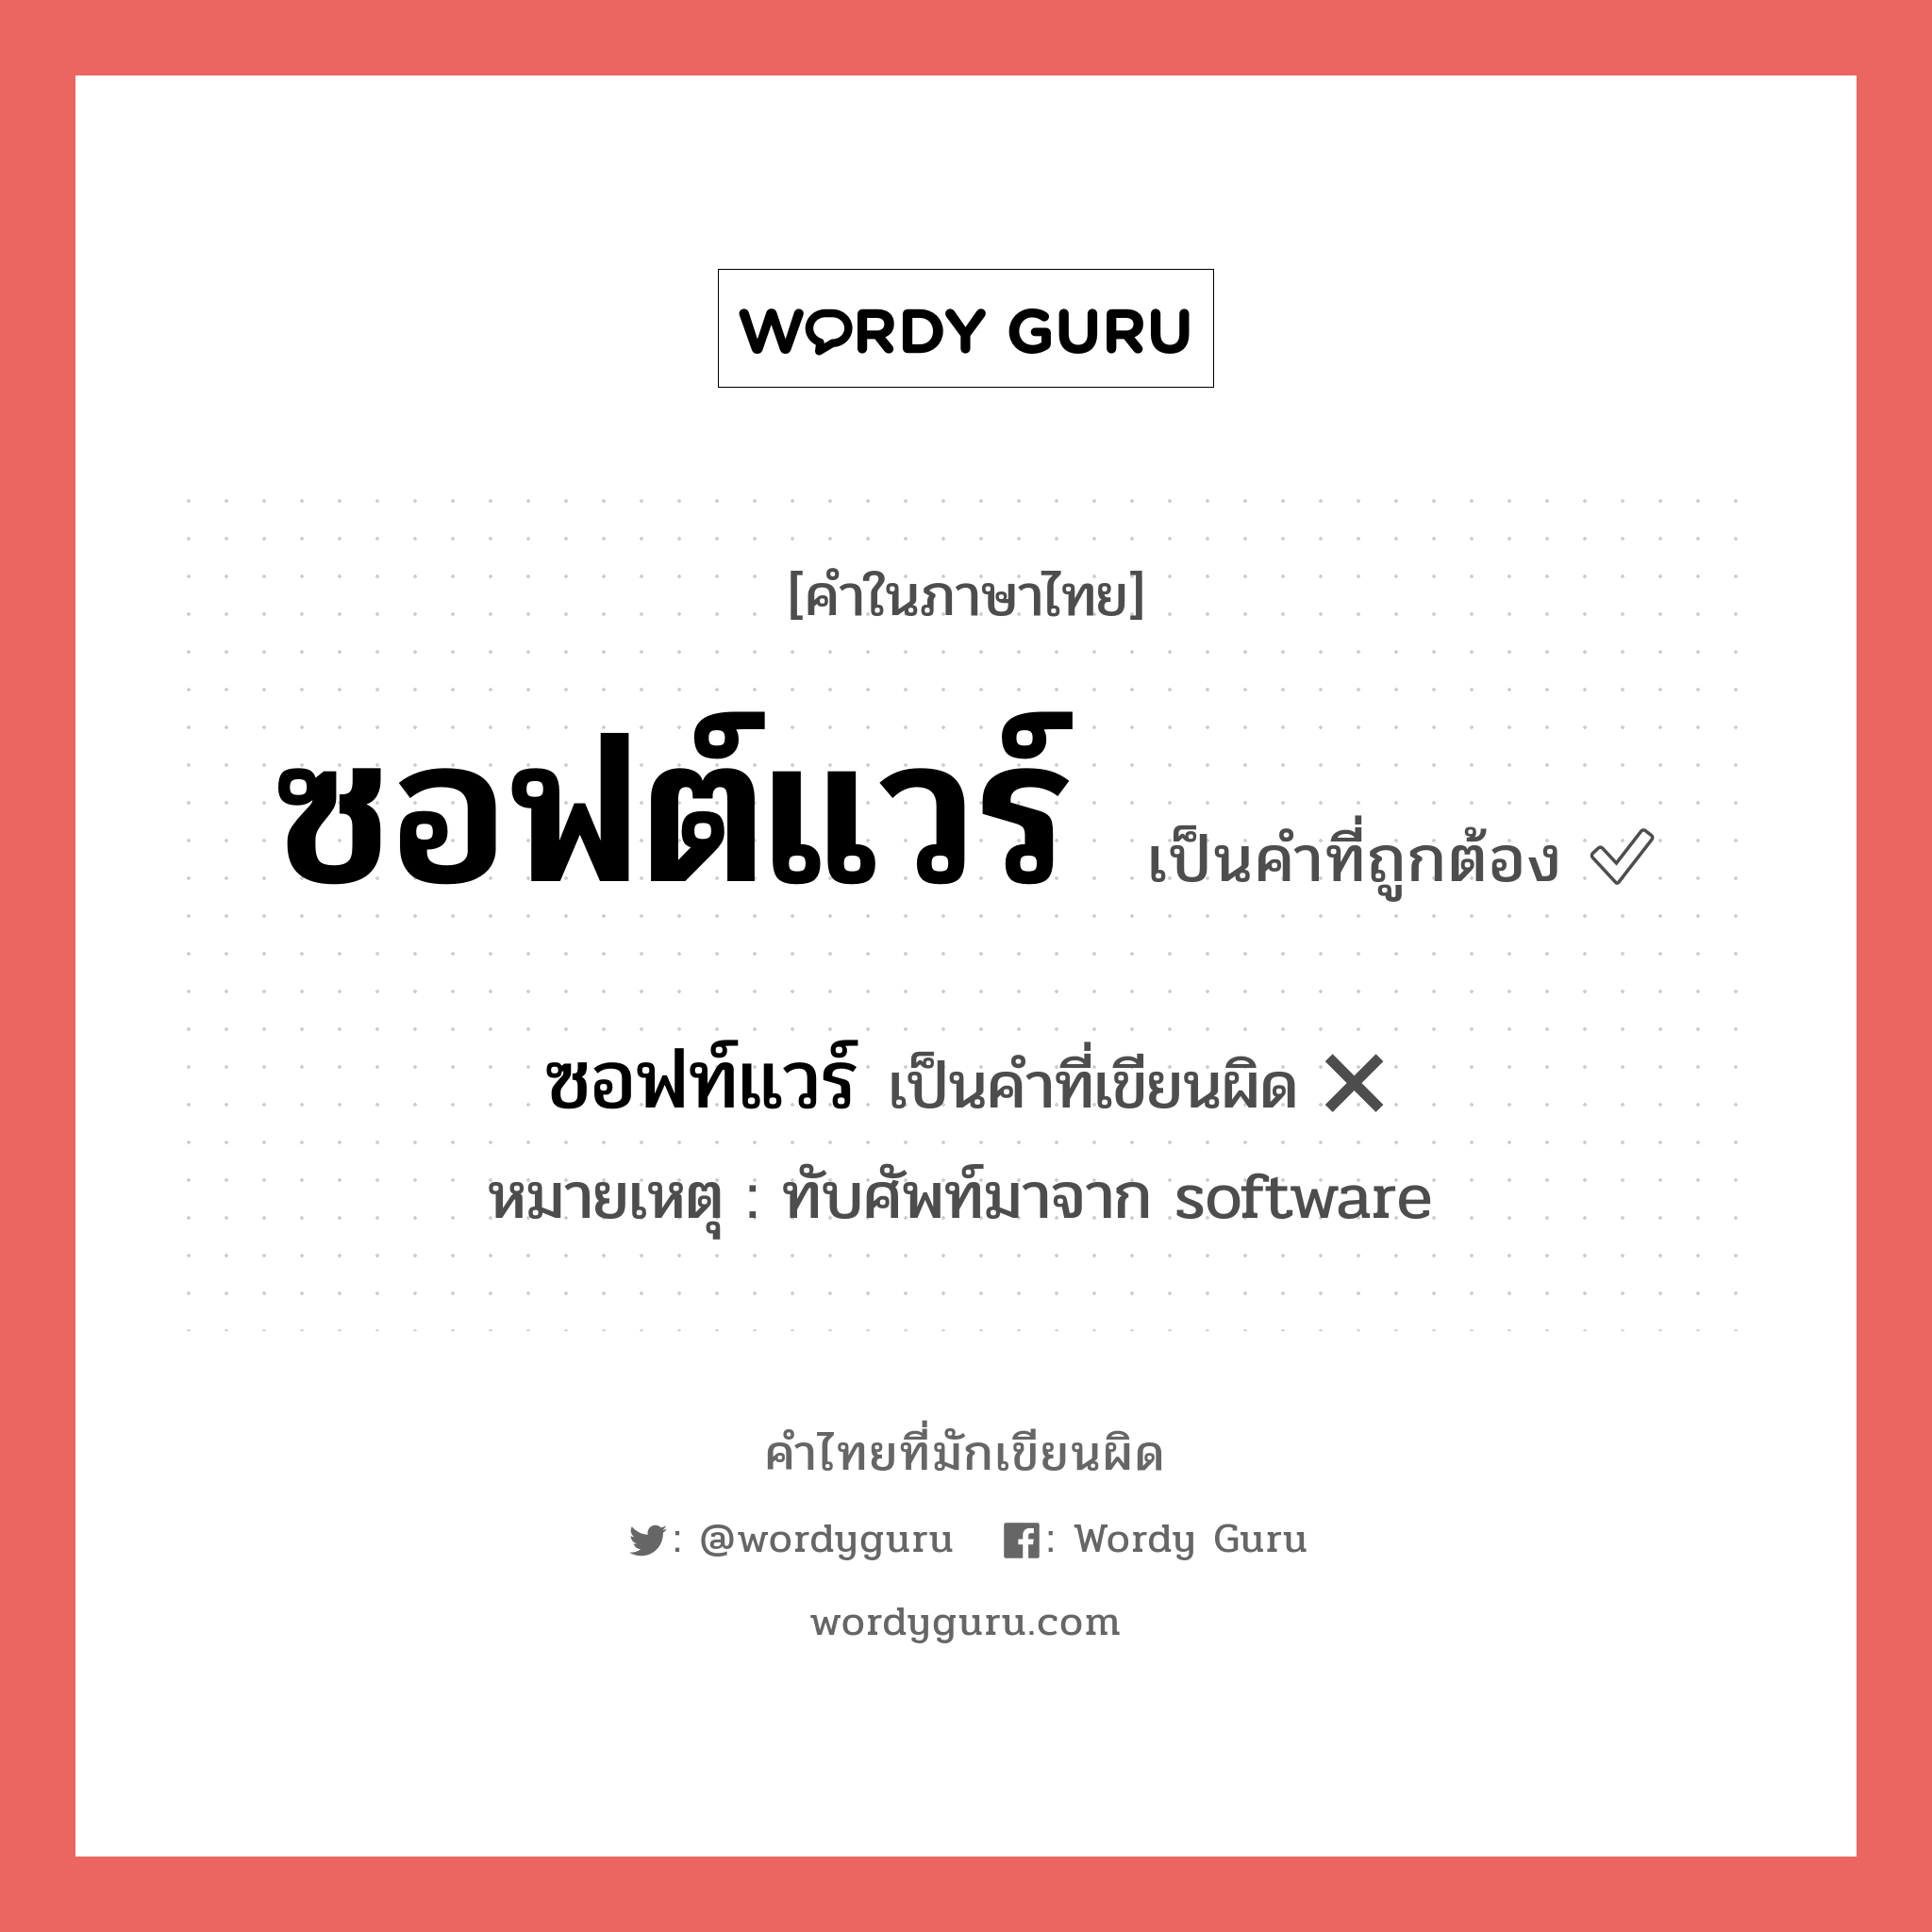 ซอฟต์แวร์ หรือ ซอฟท์แวร์ คำไหนเขียนถูก?, คำในภาษาไทยที่มักเขียนผิด ซอฟต์แวร์ คำที่ผิด ❌ ซอฟท์แวร์ หมายเหตุ ทับศัพท์มาจาก software